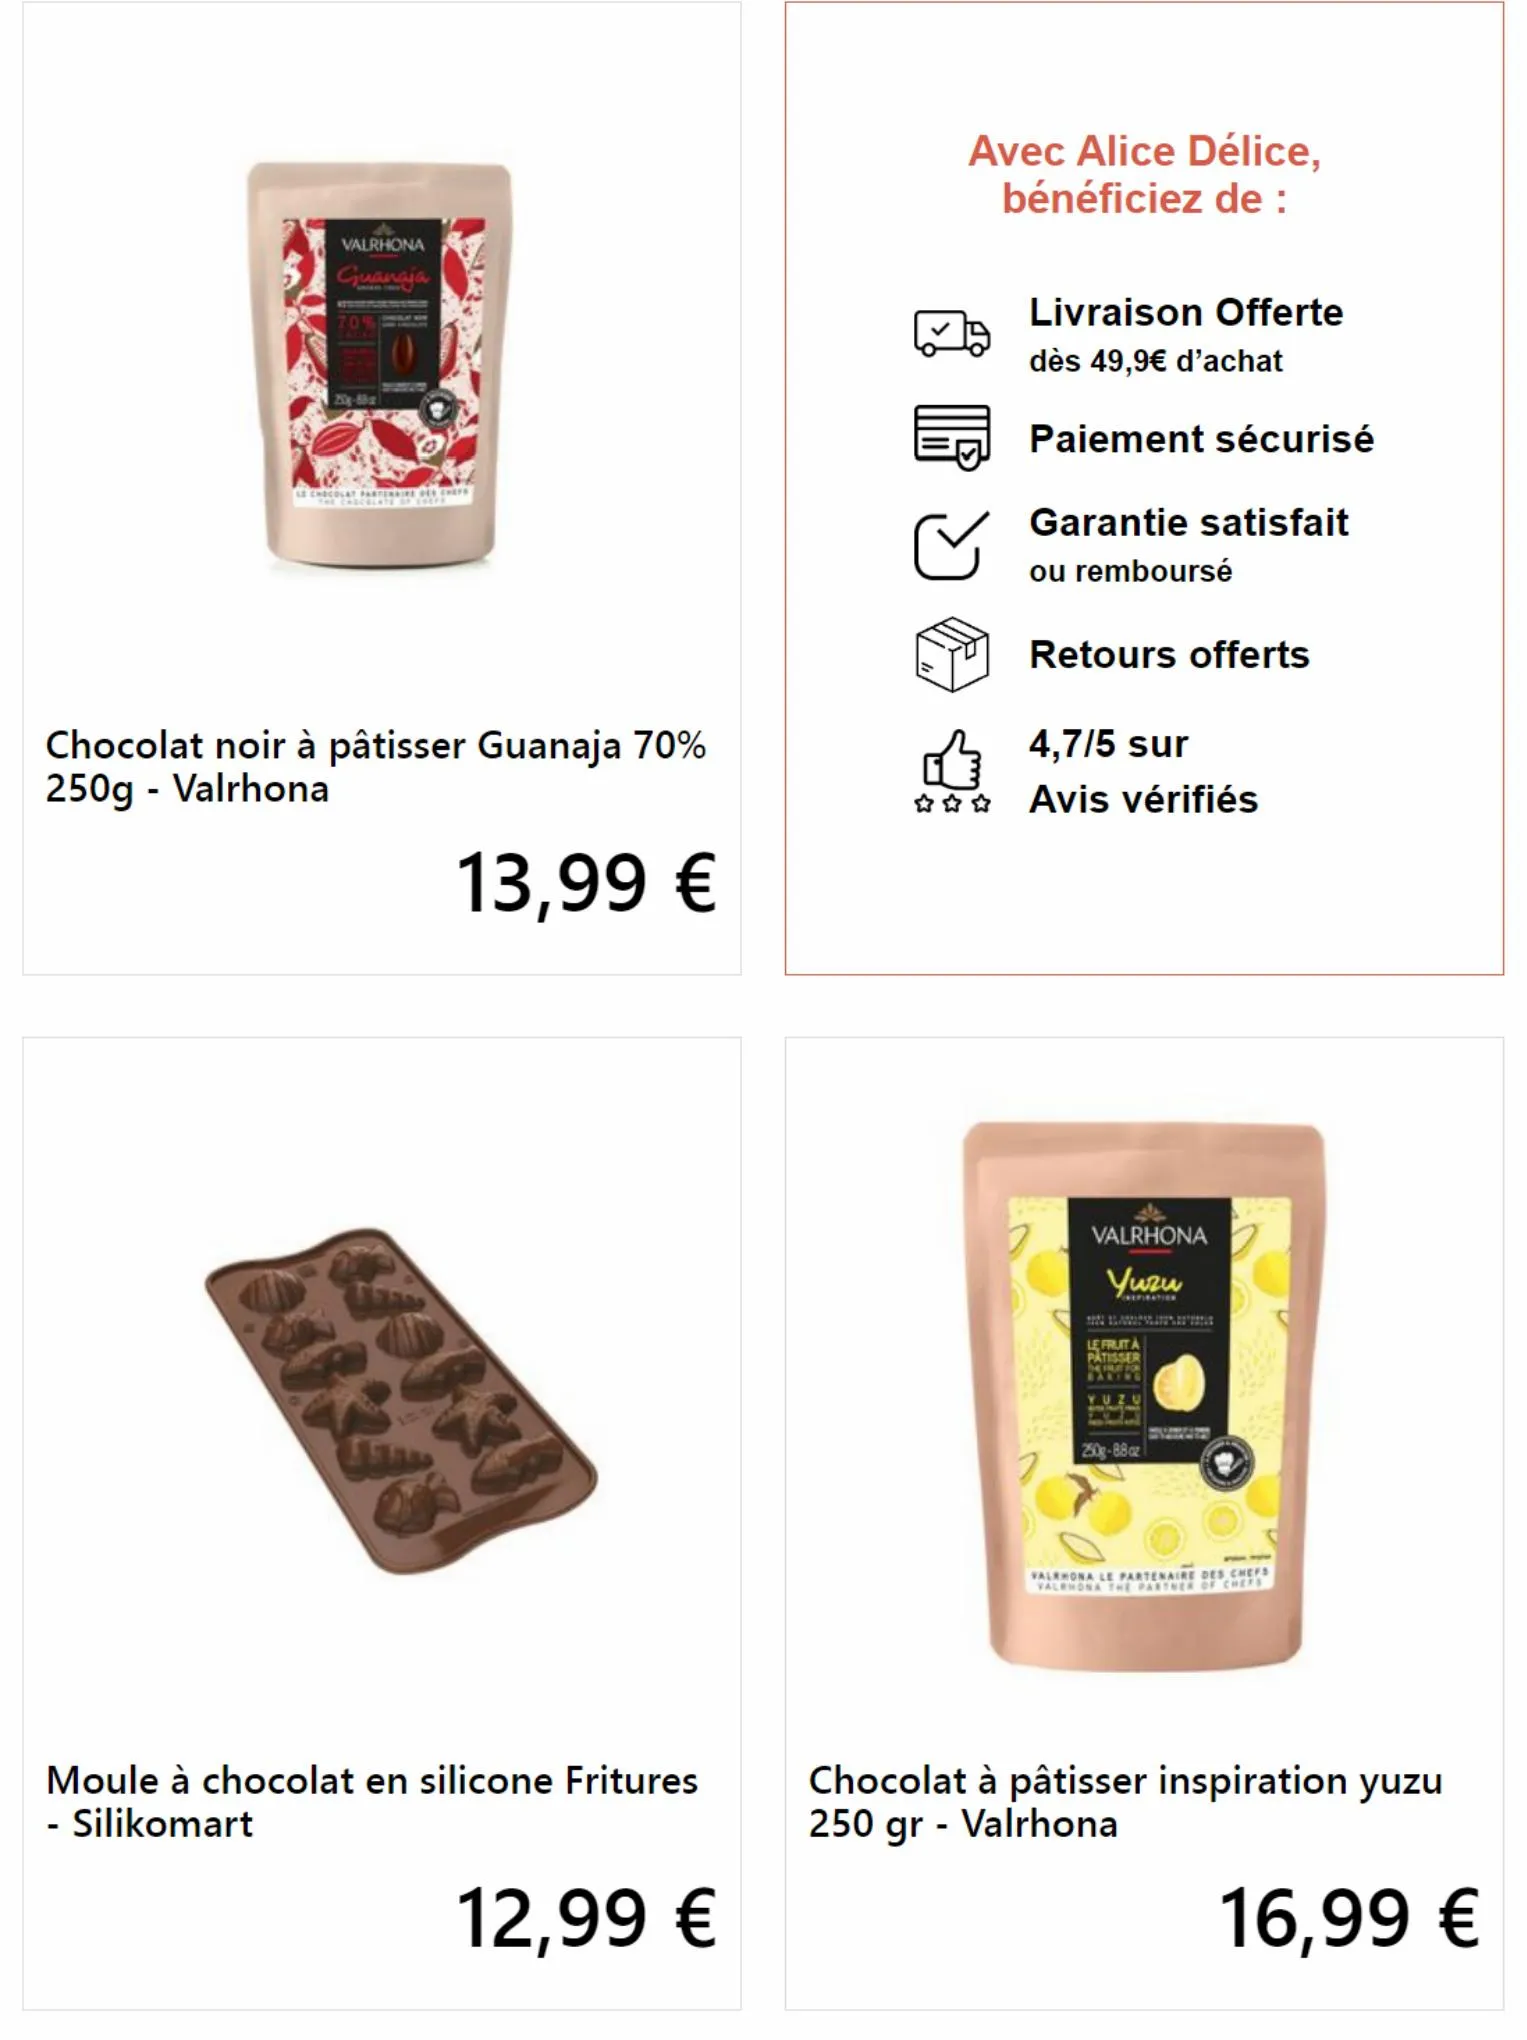 Catalogue Mes fritures en chocolat maison!, page 00003